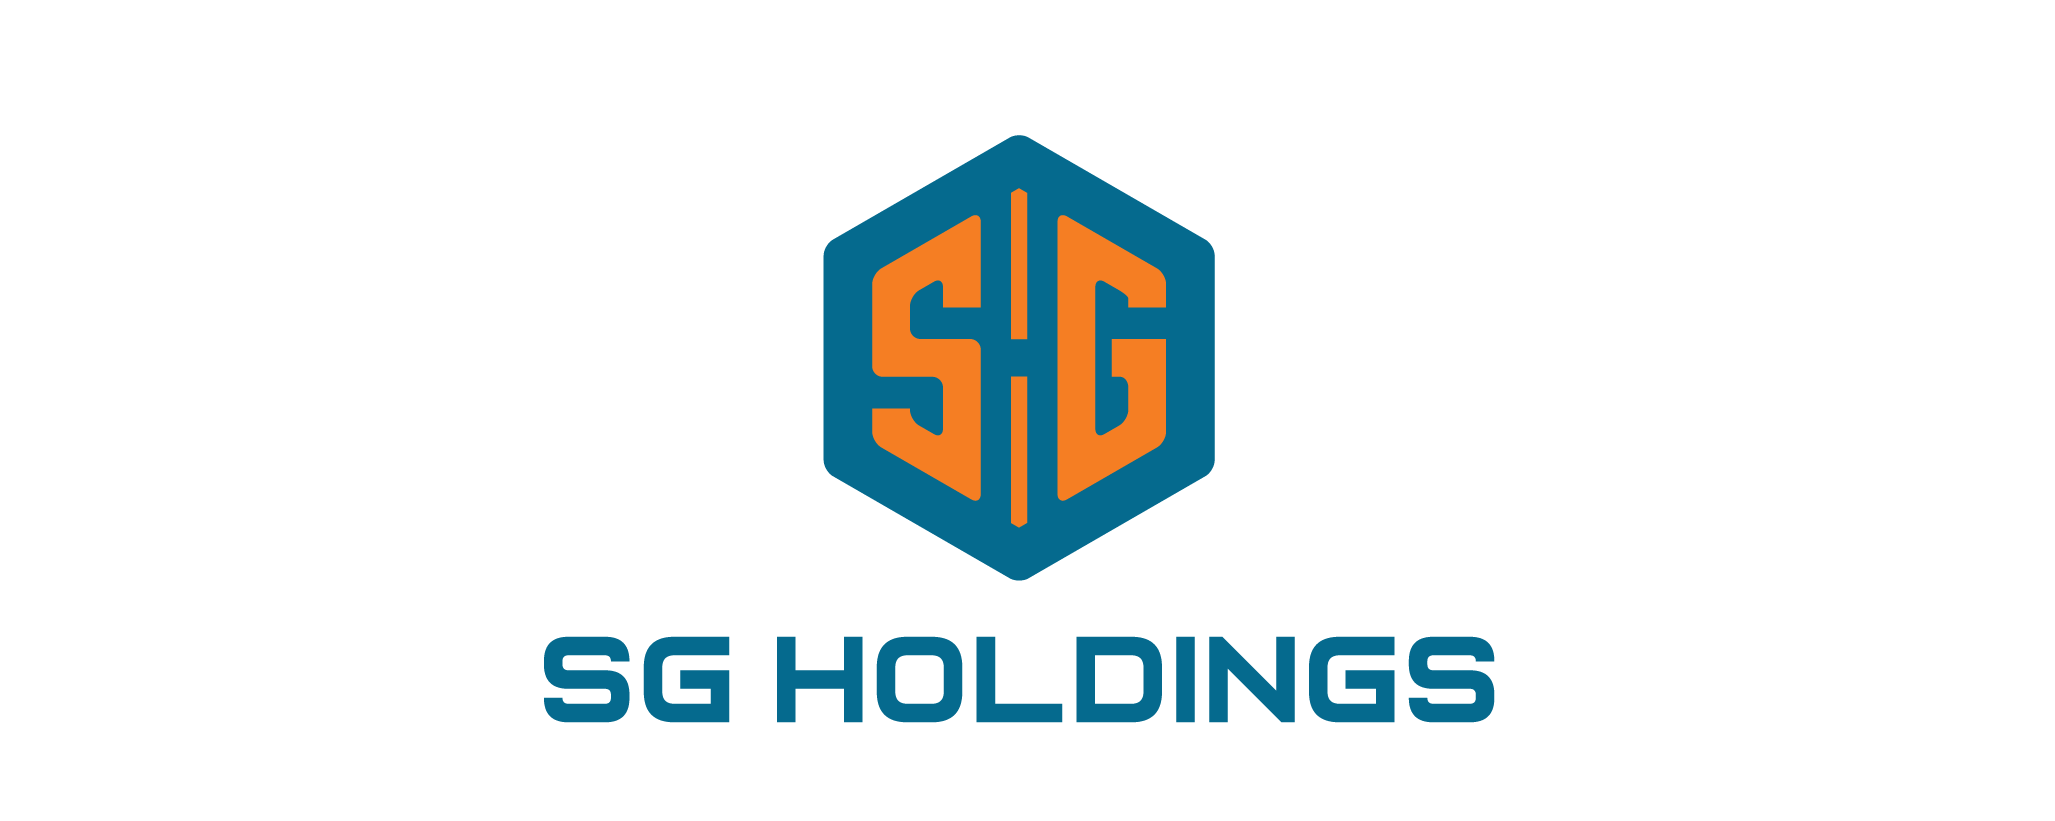 Logo SG Holdings - Official-07